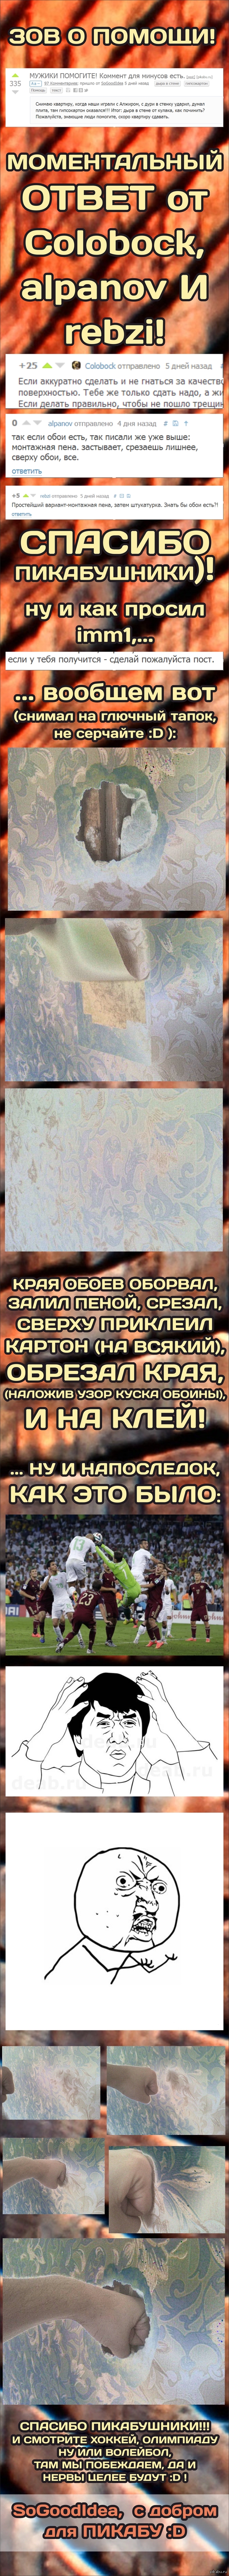    - :D    <a href="http://pikabu.ru/story/muzhiki_pomogite_komment_dlya_minusov_est_2428922">http://pikabu.ru/story/_2428922</a>